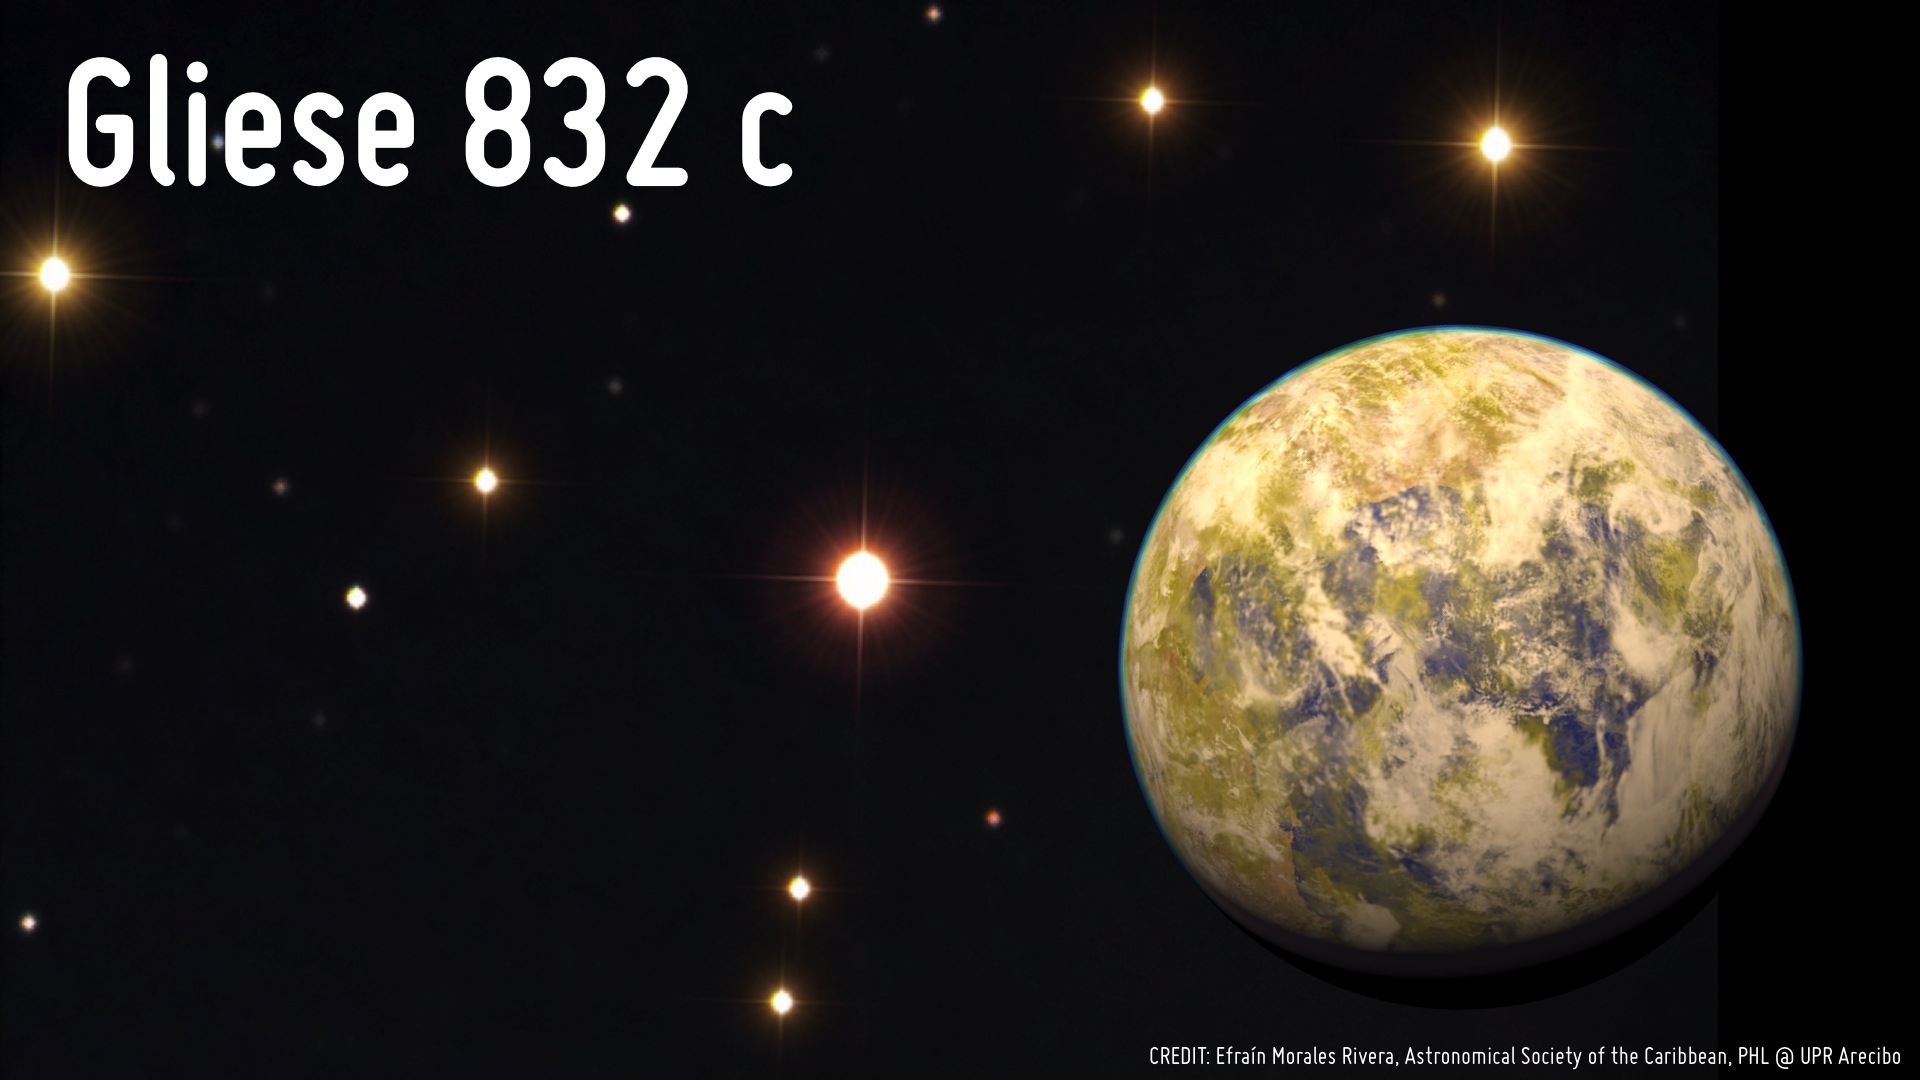 Illustration de la superterre Gliese 832c. À l’arrière-plan : photo de Gliese 832, naine rouge visible dans la constellation australe de la Grue, à 16 années-lumière de la Terre. © Efraín Morales Rivera (Astronomical Society of the Caribbean), PHL, UPR Arecibo